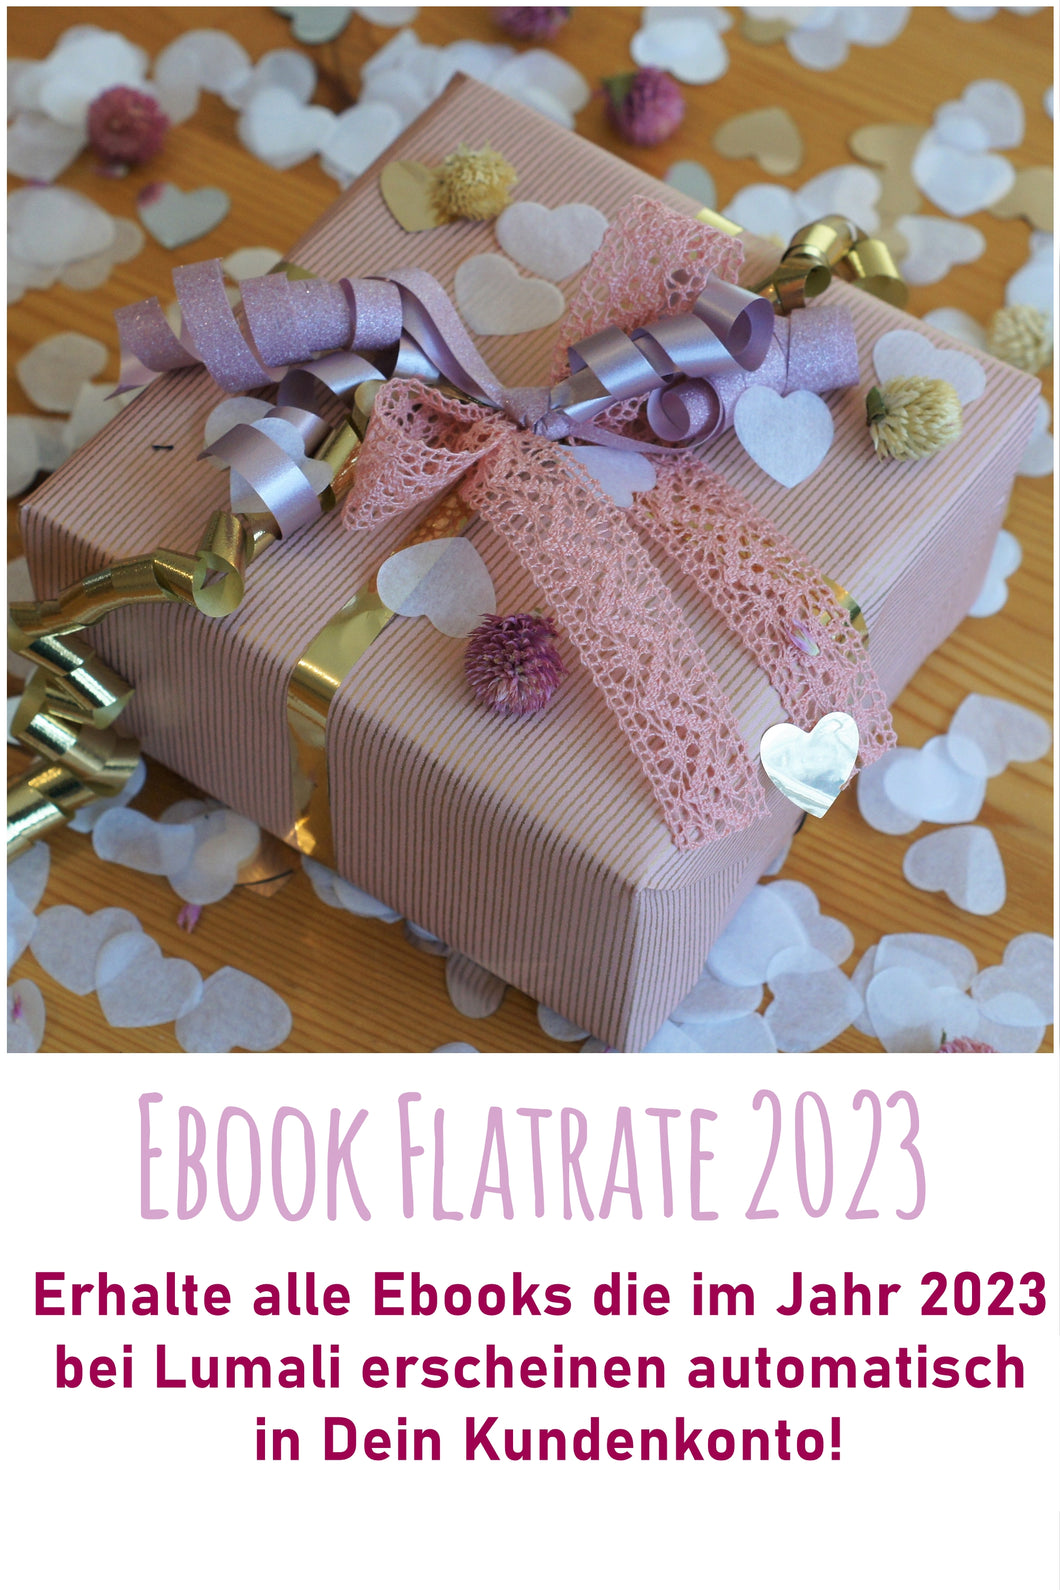 Ebook-Flatrate 2023